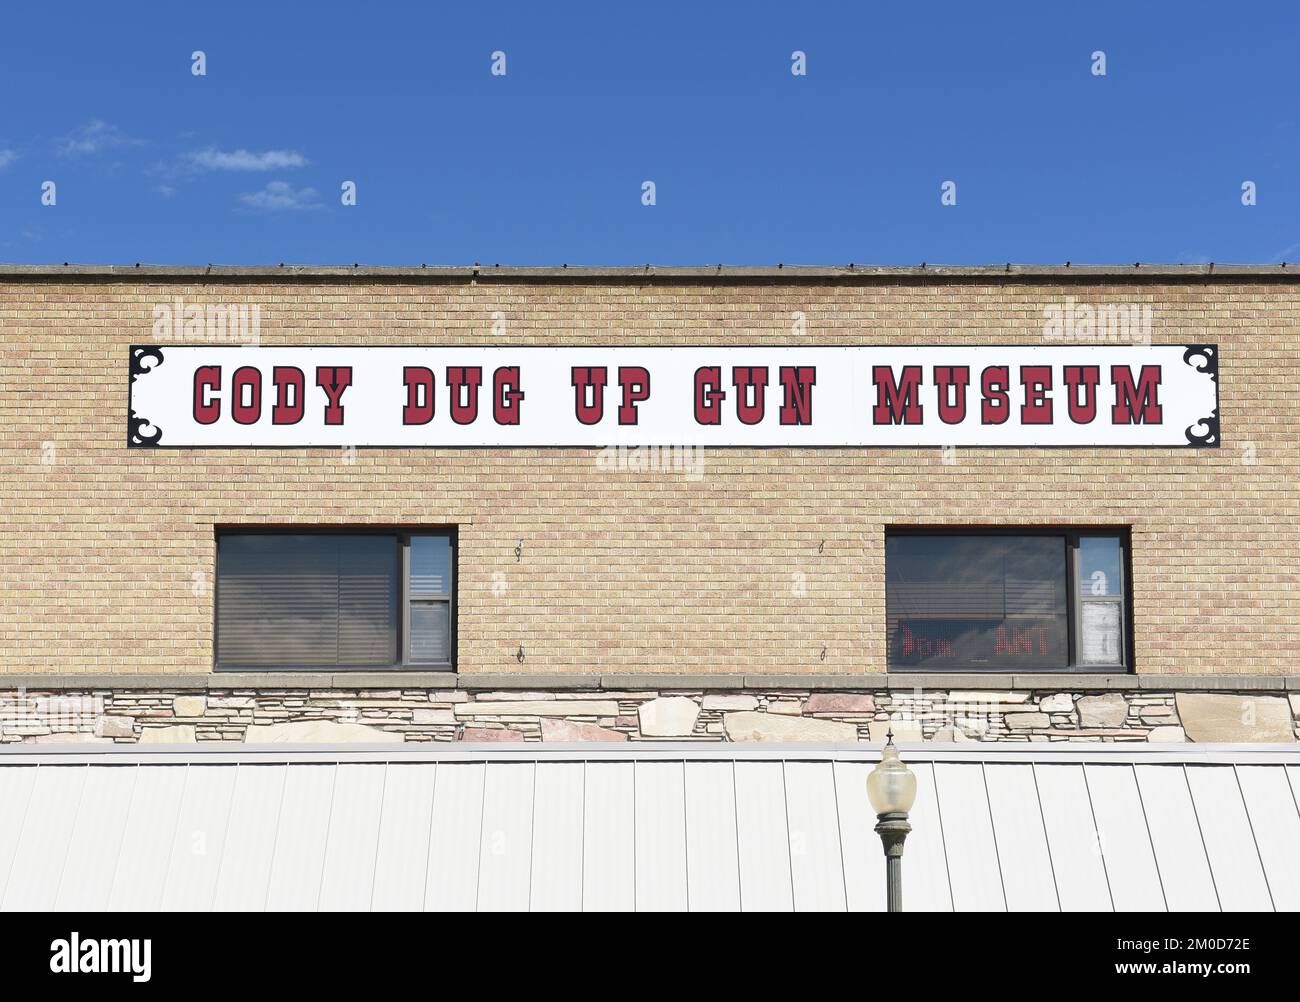 CODY, WYOMING - 24 JUIN 2017 : panneau sur le bâtiment du musée Cody Dug Up Gun. Banque D'Images